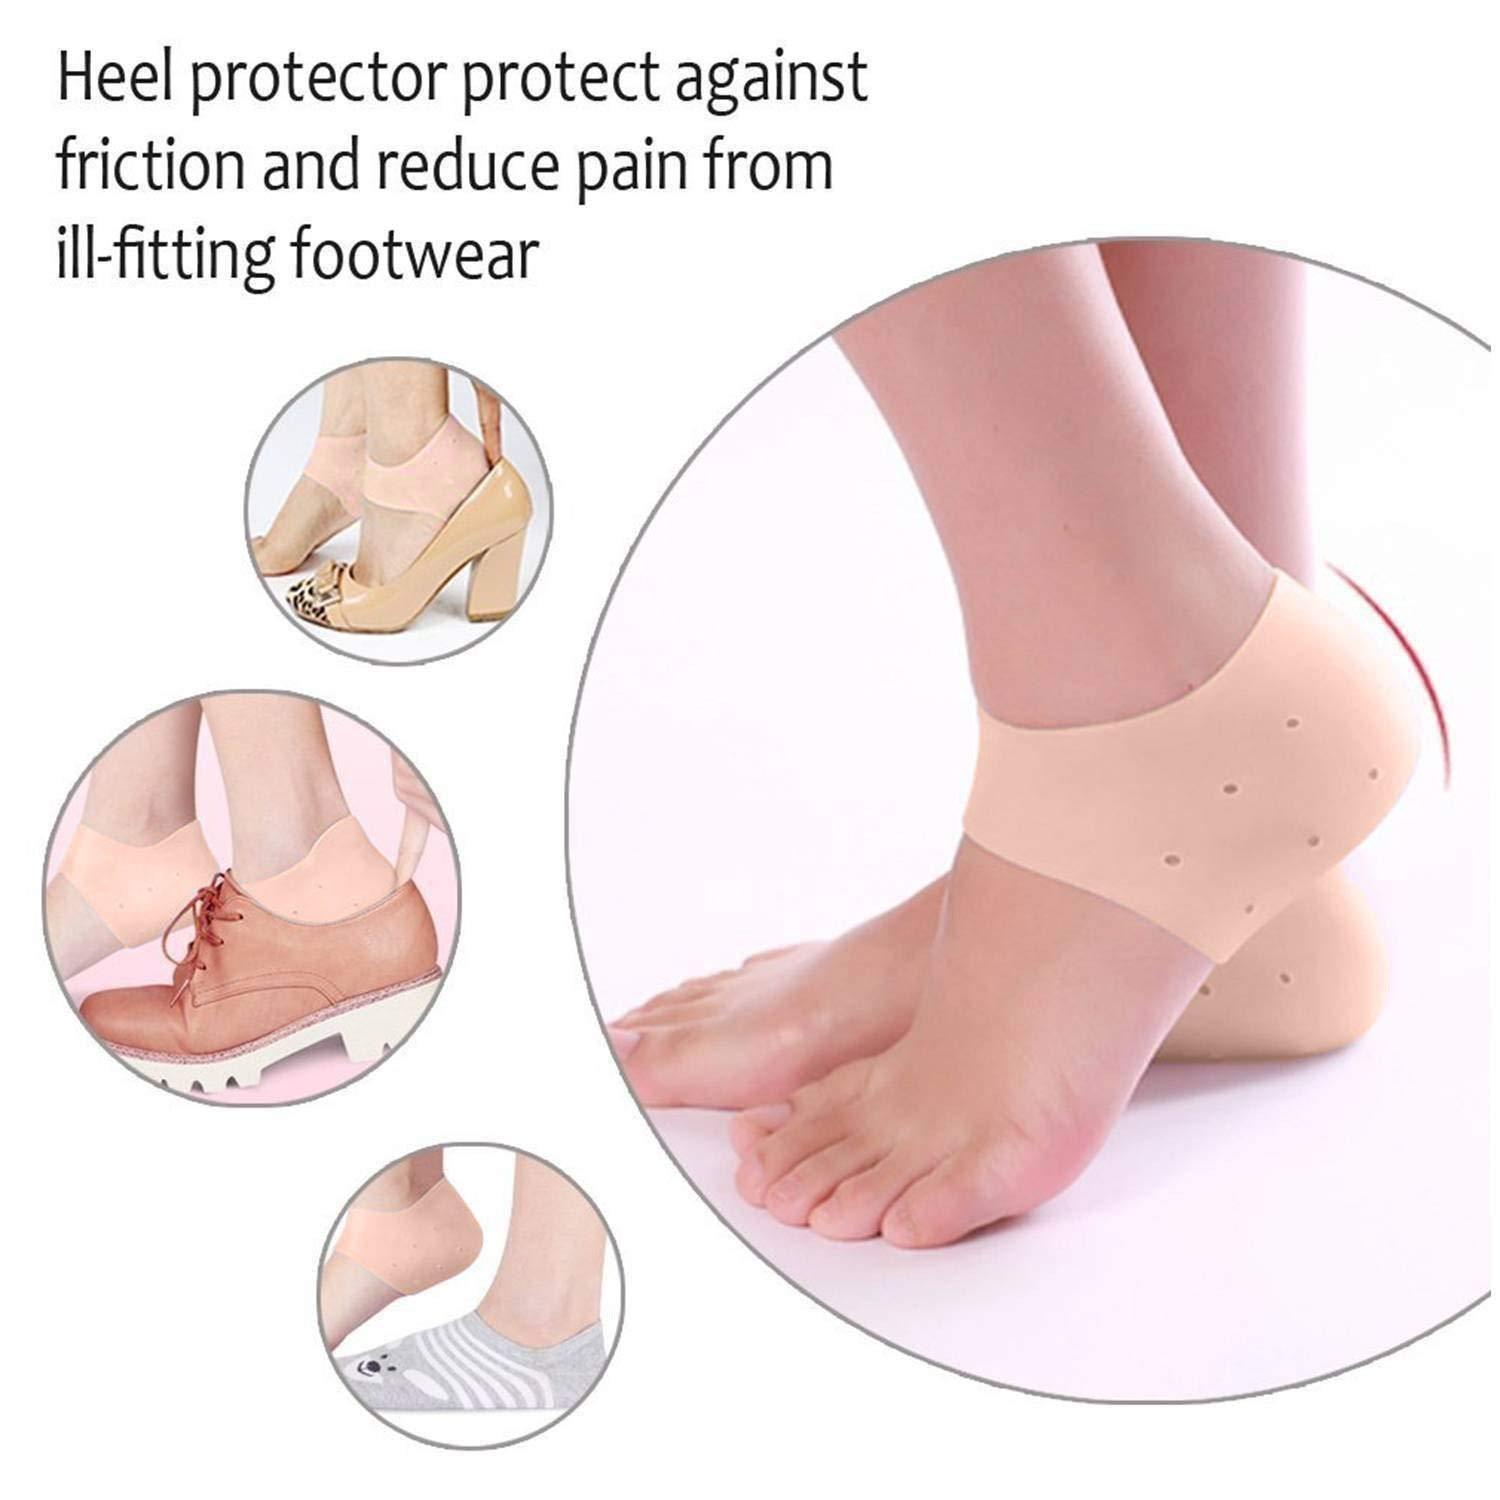 heel pad pain relief